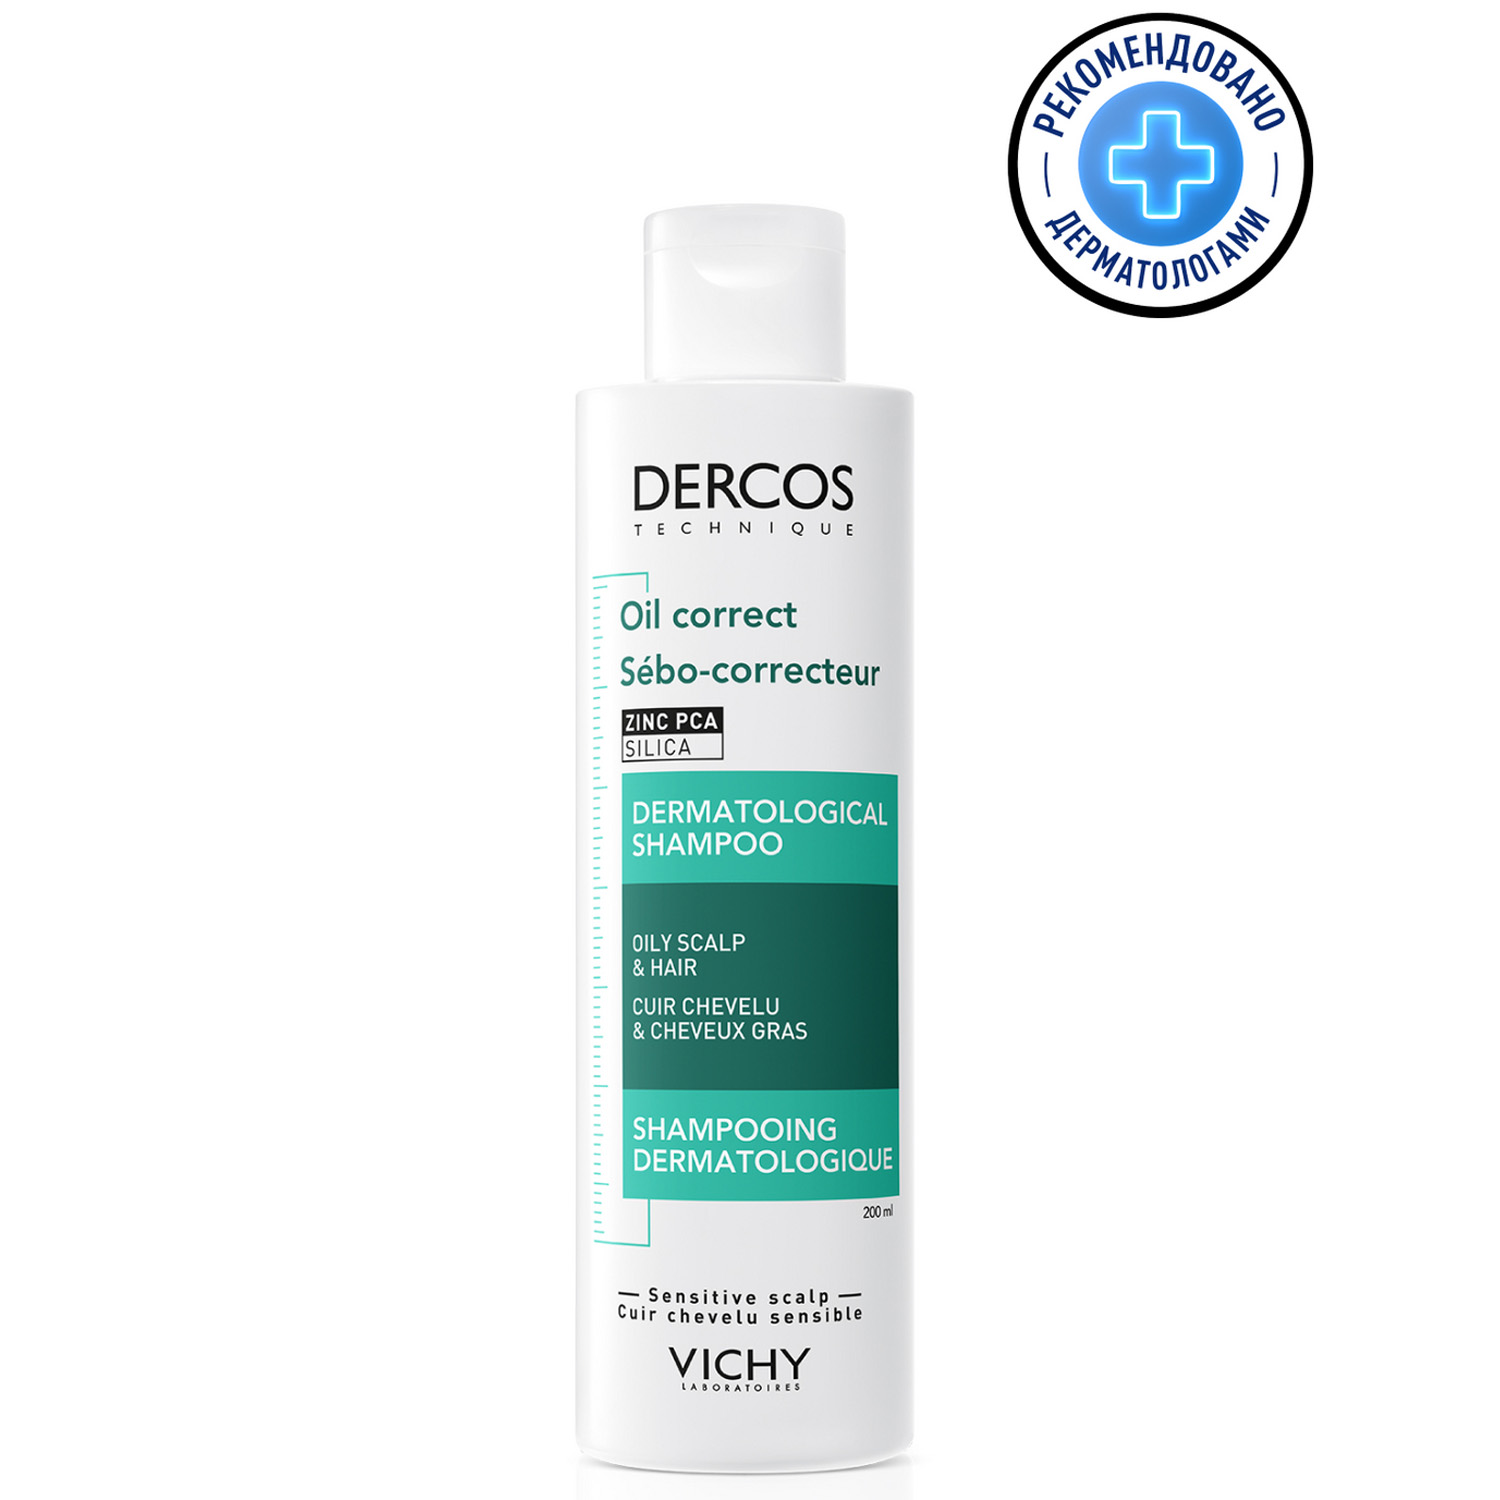 Vichy Регулирующий шампунь-уход для жирной кожи головы, Technique Oil Control, 200 мл (Vichy, Dercos)